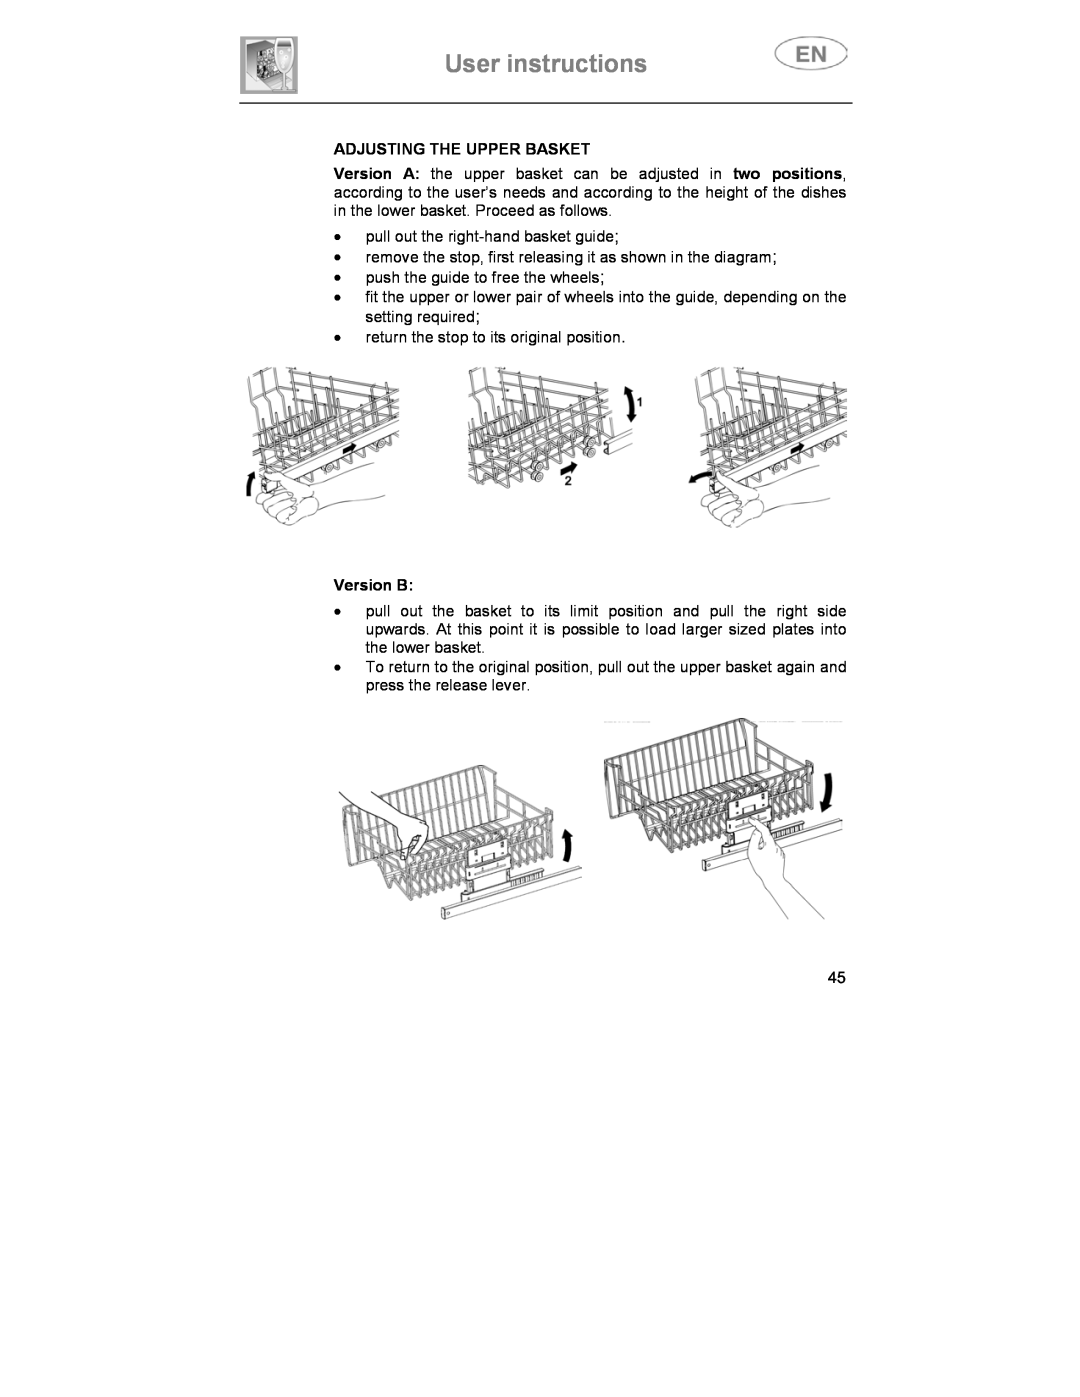 Smeg CA01-3 instruction manual User instructions, Adjusting The Upper Basket, Version B 